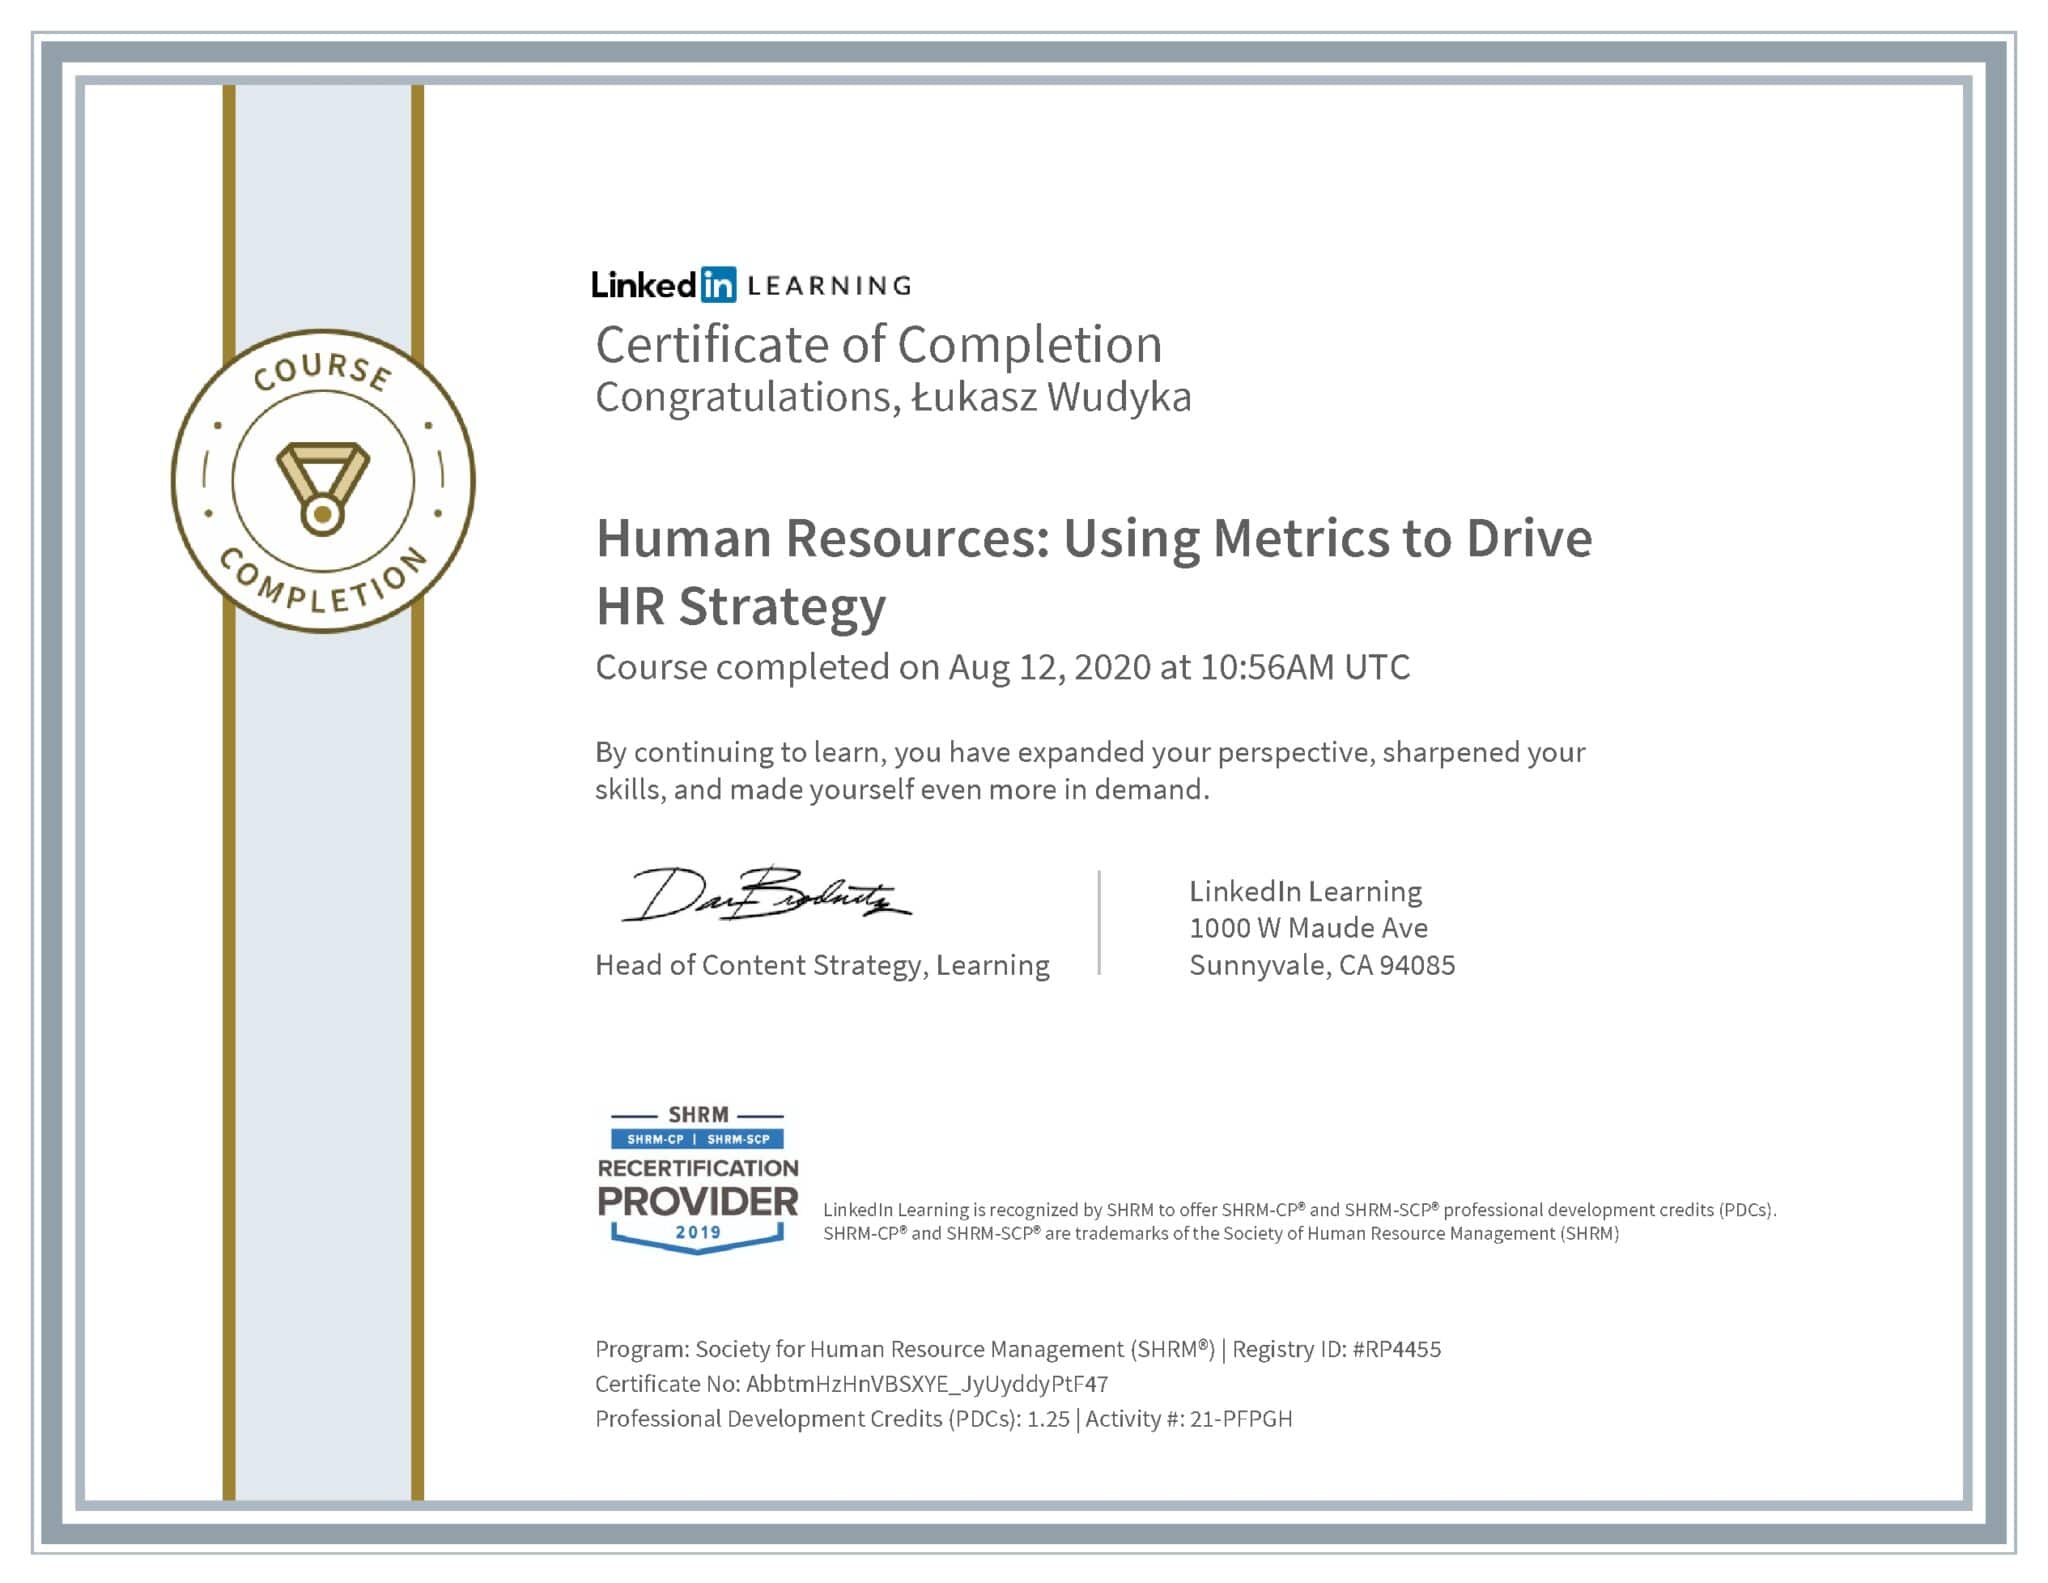 Łukasz Wudyka certyfikat LinkedIn Human Resources: Using Metrics to Drive HR Strategy SHRM